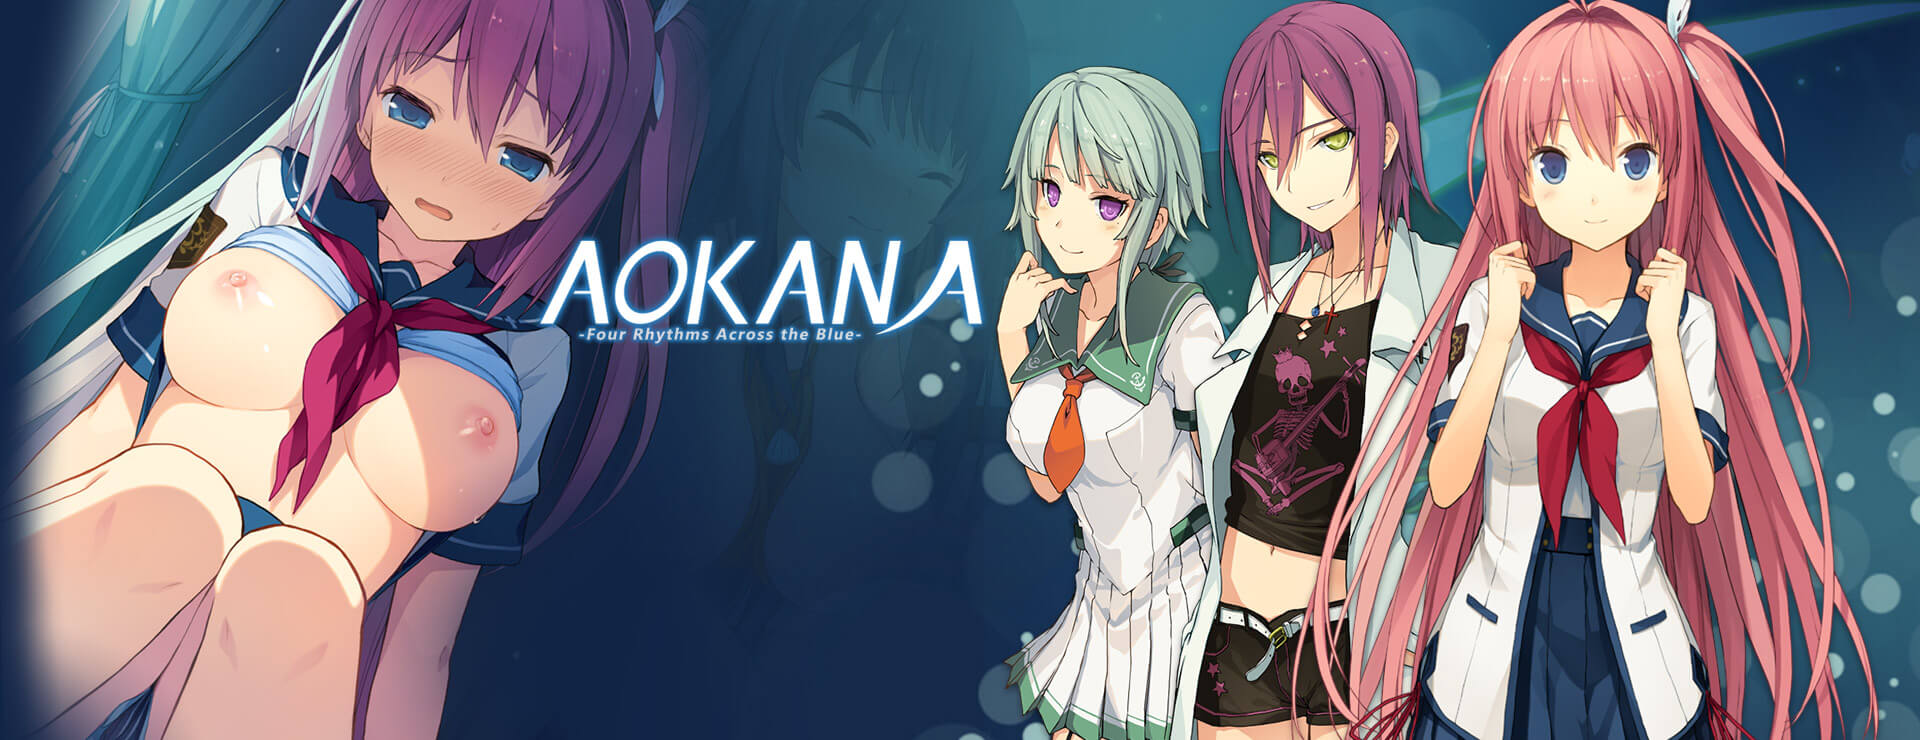 Aokana - Four Rhythms Across the Blue - ビジュアルノベル ゲーム